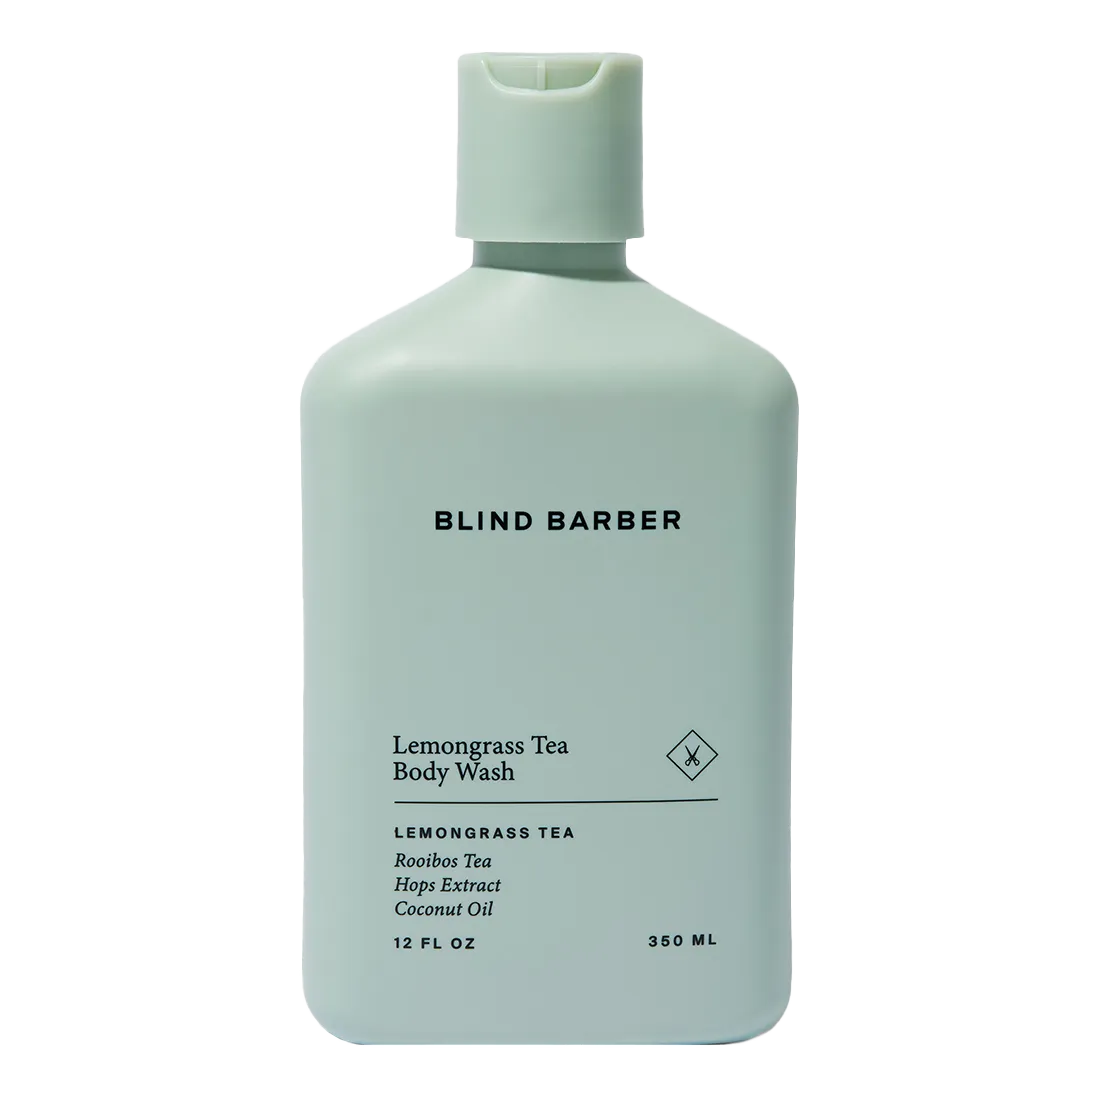 Blind Barber Lemongrass Tea Body Wash 